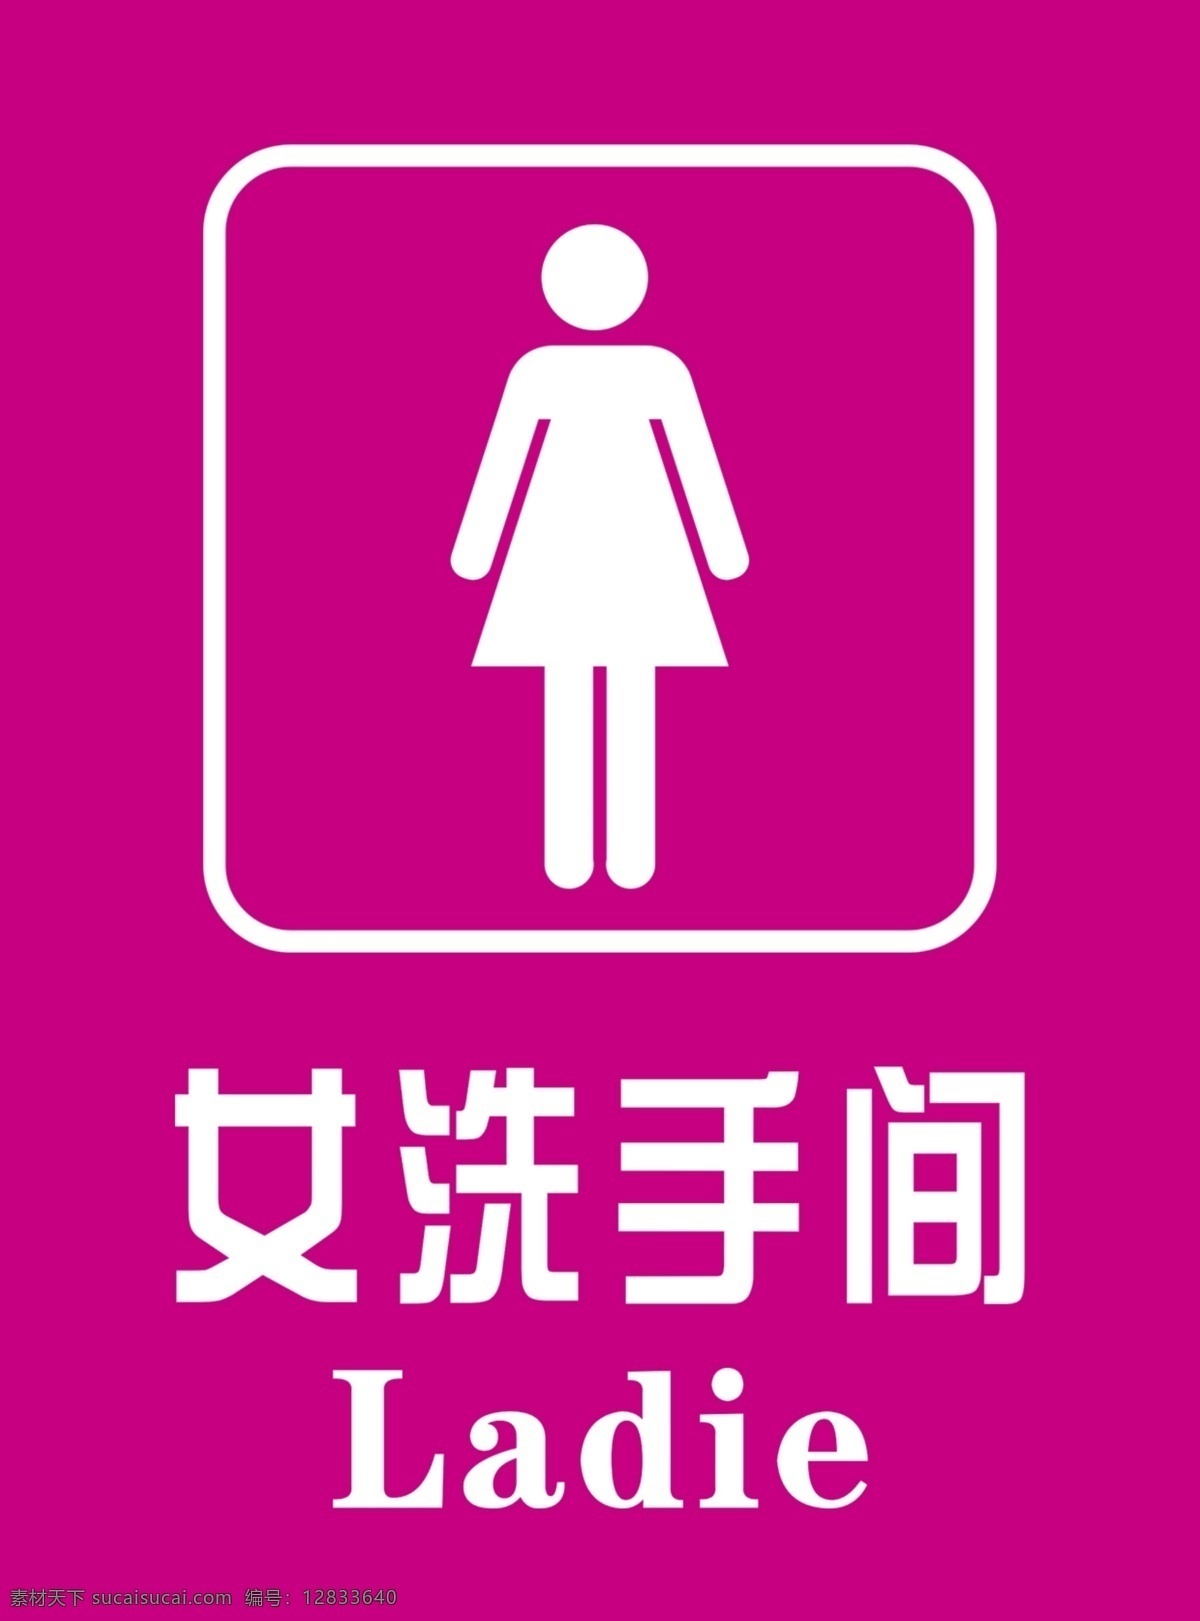 男女洗手间 洗手间 洗手间标牌 洗手间图标 公共标识 标志图标 公共标识标志